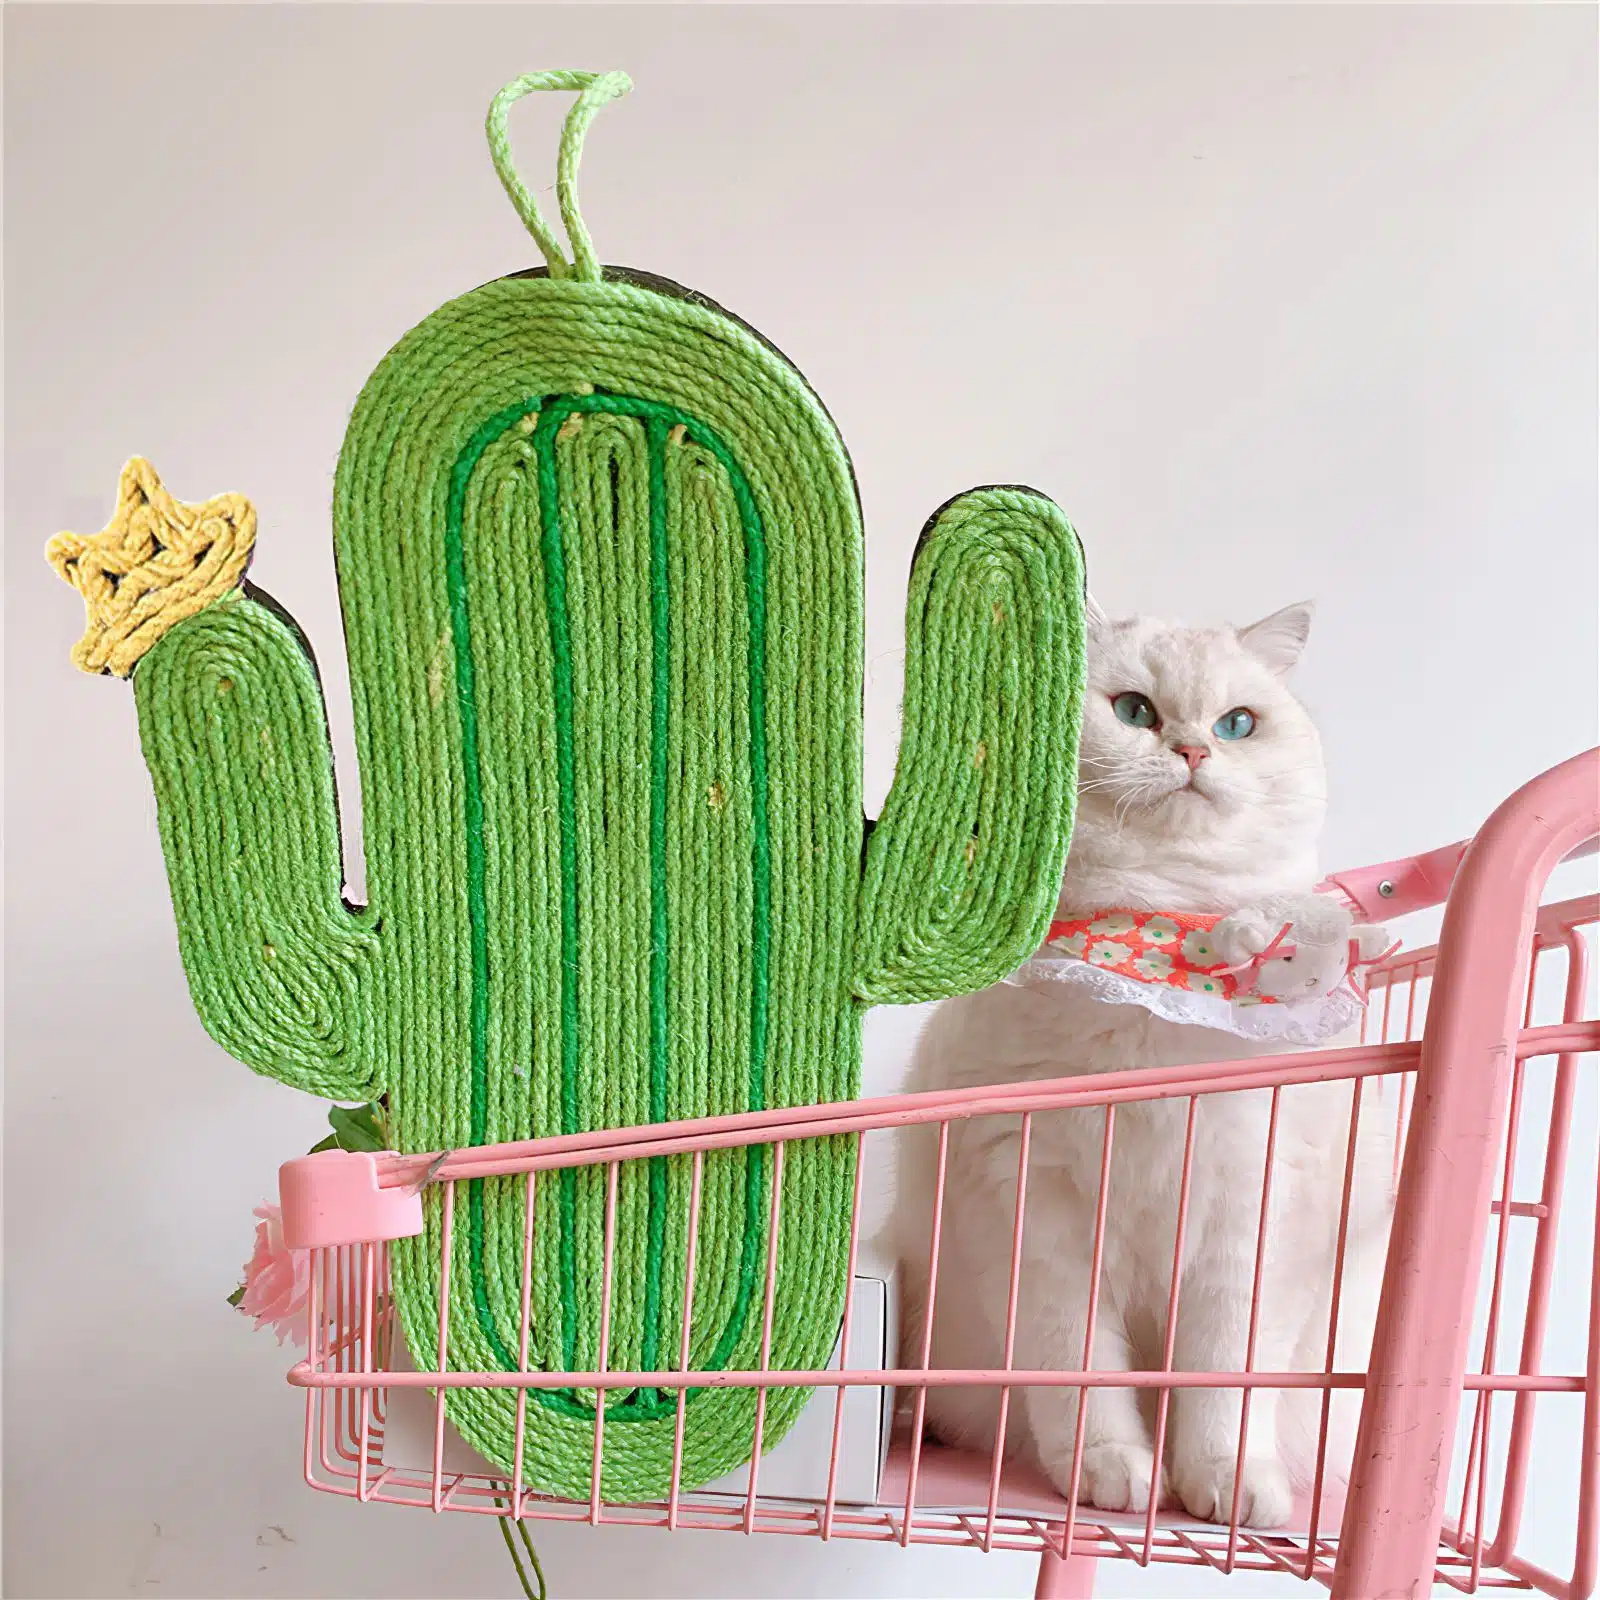 Griffoir en forme de cactus pour chat vert et jaune dans un panier avec un chat